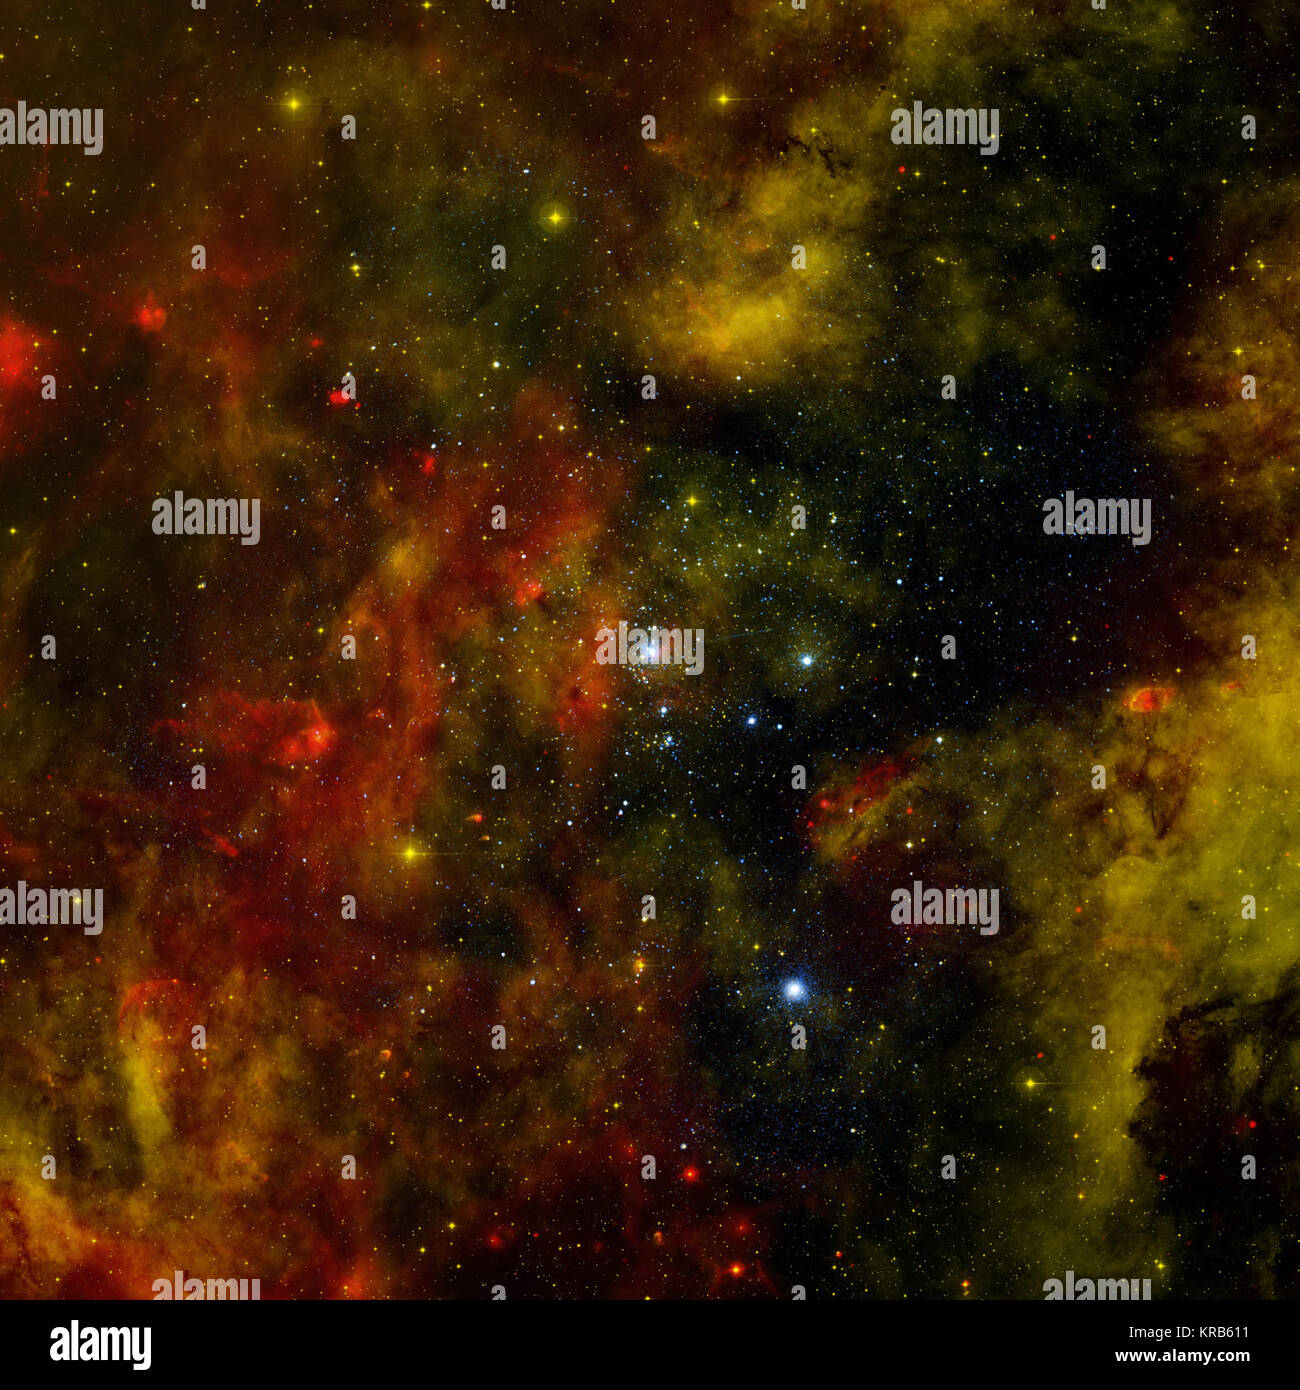 La Voie lactée et les autres galaxies de l'univers beaucoup de jeunes port d'amas d'étoiles et d'associations qui chacune contiennent des centaines de milliers de petites, massive, connu sous le nom de jeunes étoiles O et B stars. La star cluster Cygnus OB2 contient plus de 60 étoiles de type O et un millier d'étoiles de type B. Observations profondes avec la NASA's Chandra X-ray Observatory ont servi à détecter les émissions de rayons X les atmosphères extérieures, ou des coronas, de jeunes étoiles de la grappe et de sonder la manière dont ces fascinants la formation et l'évolution des usines star. Environ 1 700 sources de rayons X ont été détectés, dont environ 1 450 pensé Banque D'Images